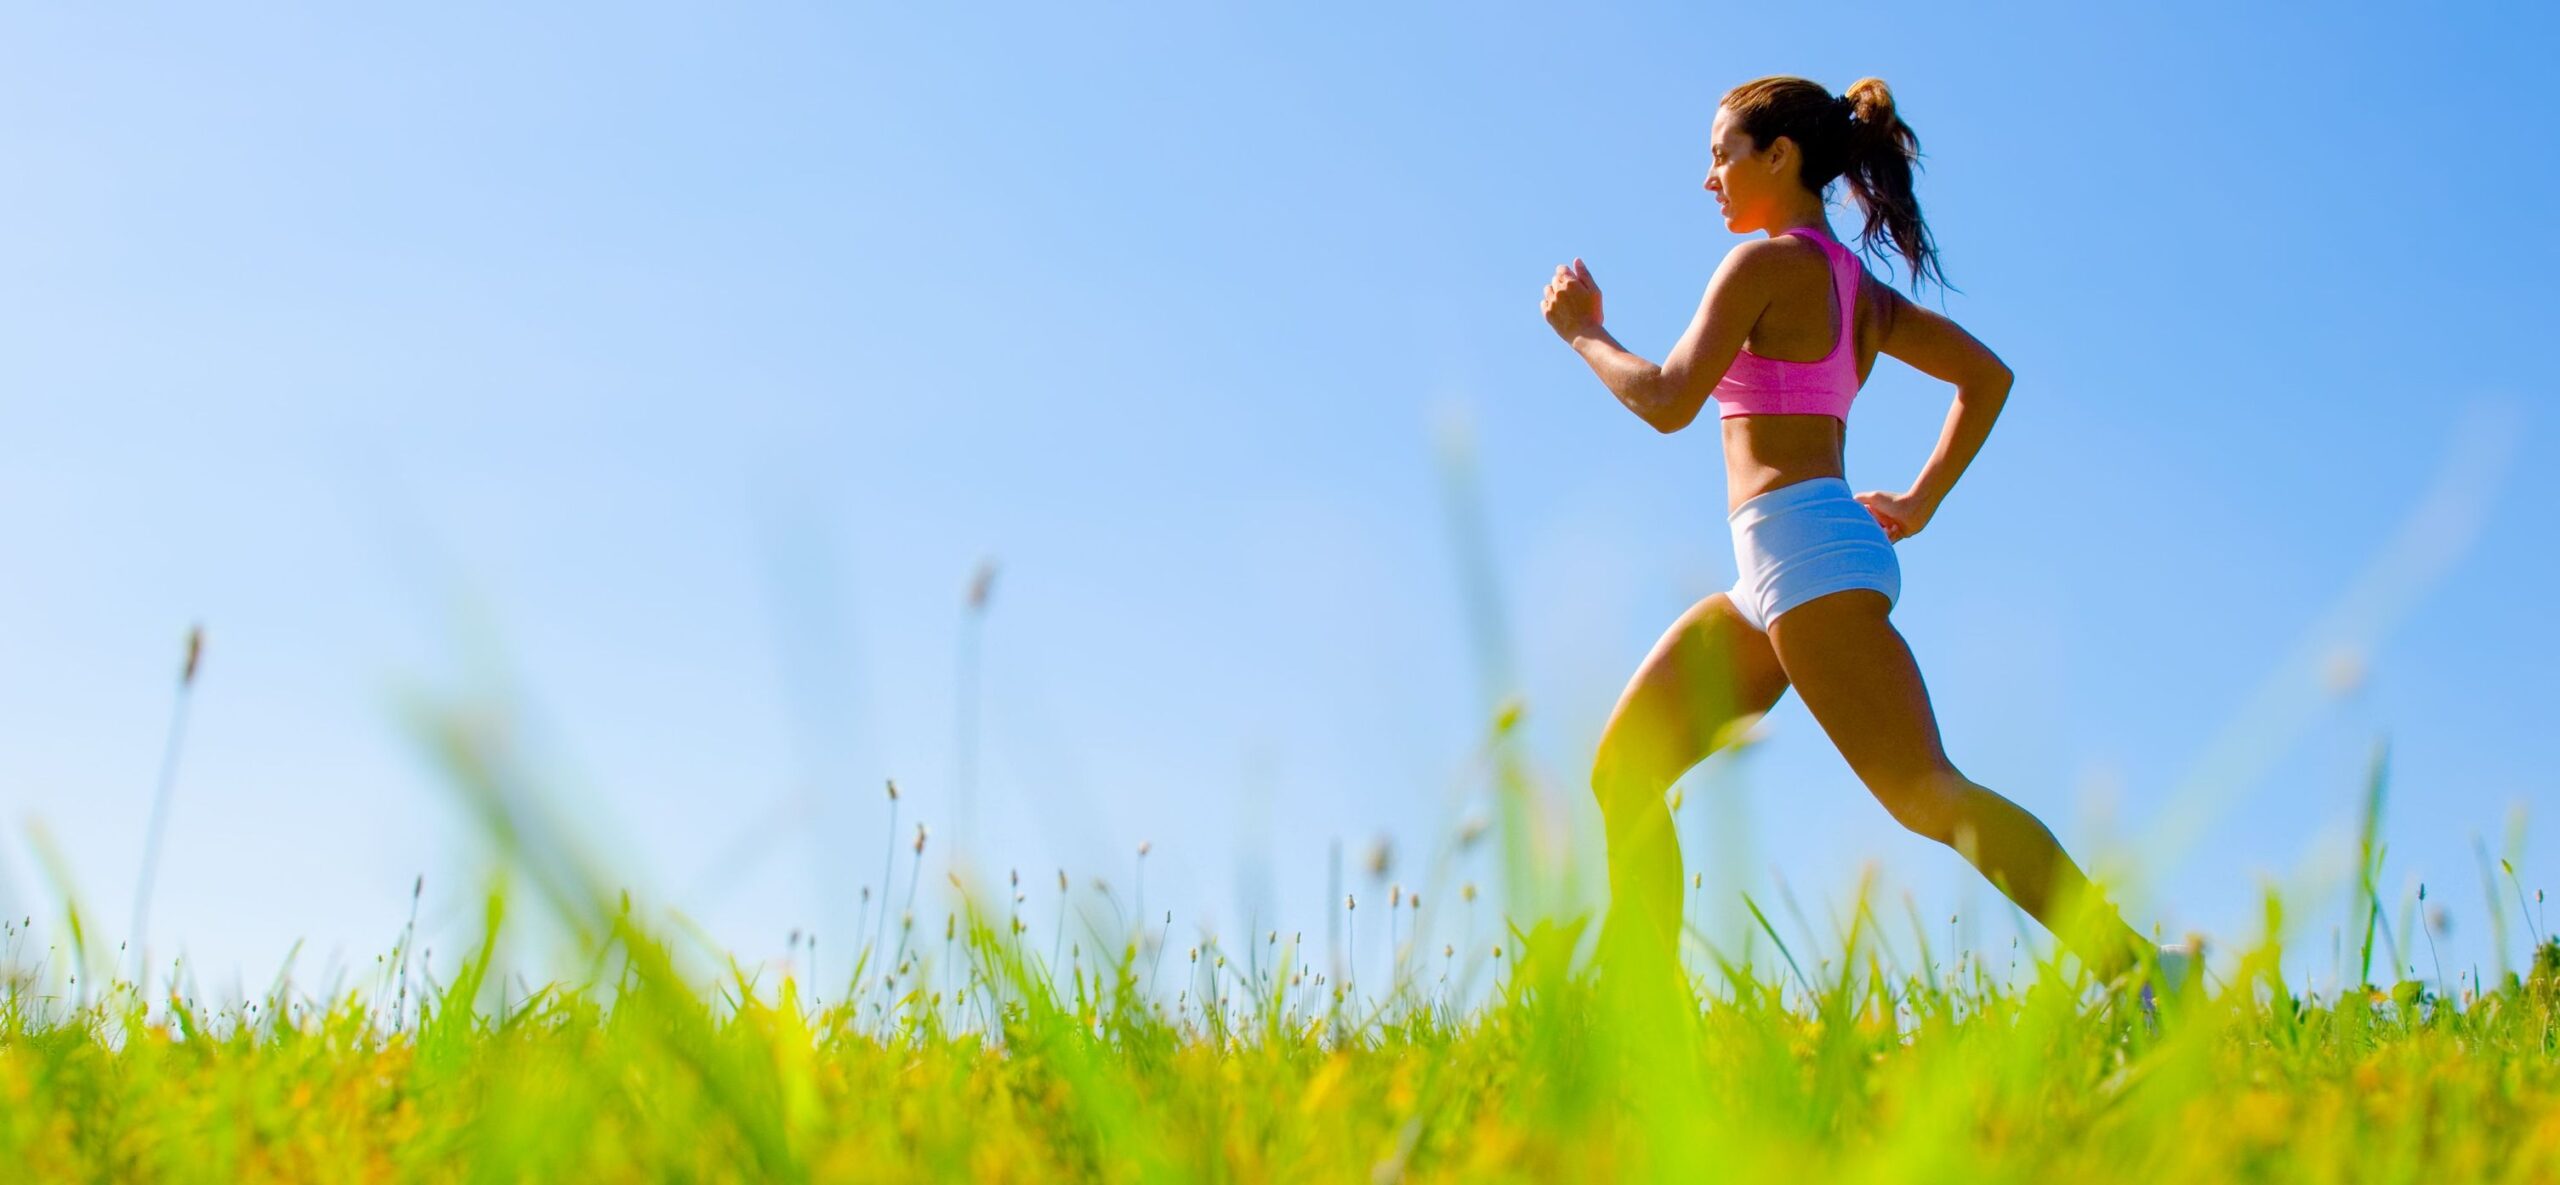 Πέντε λόγοι για να εντάξετε το τρέξιμο στη ζωή σας